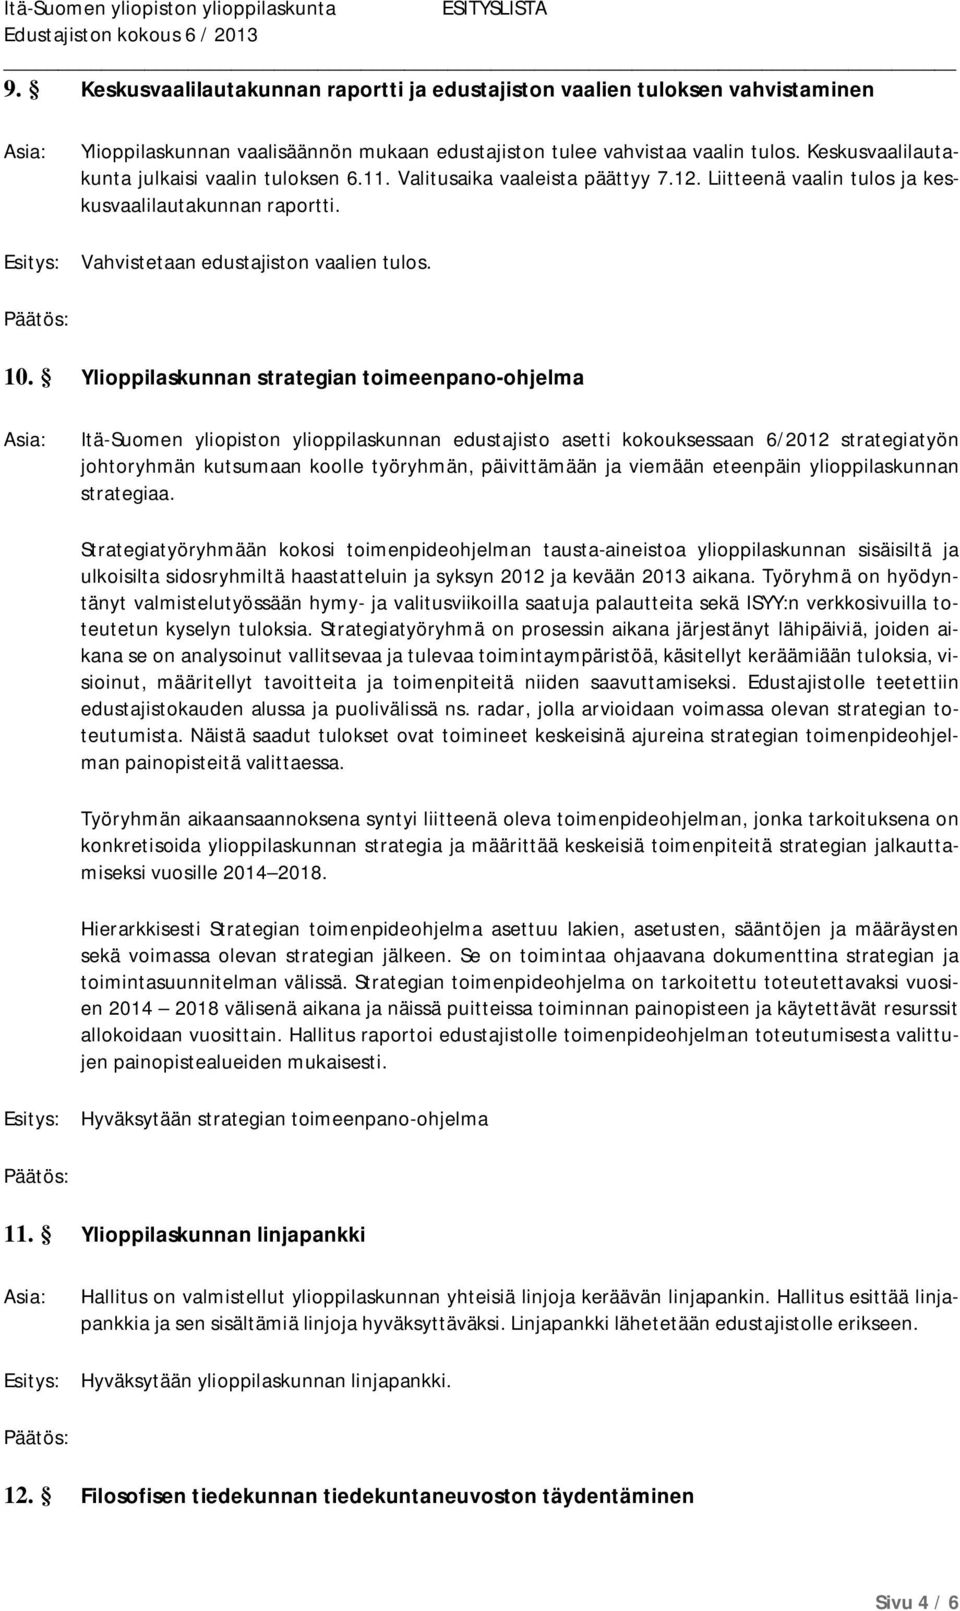 Ylioppilaskunnan strategian toimeenpano-ohjelma Itä-Suomen yliopiston ylioppilaskunnan edustajisto asetti kokouksessaan 6/2012 strategiatyön johtoryhmän kutsumaan koolle työryhmän, päivittämään ja